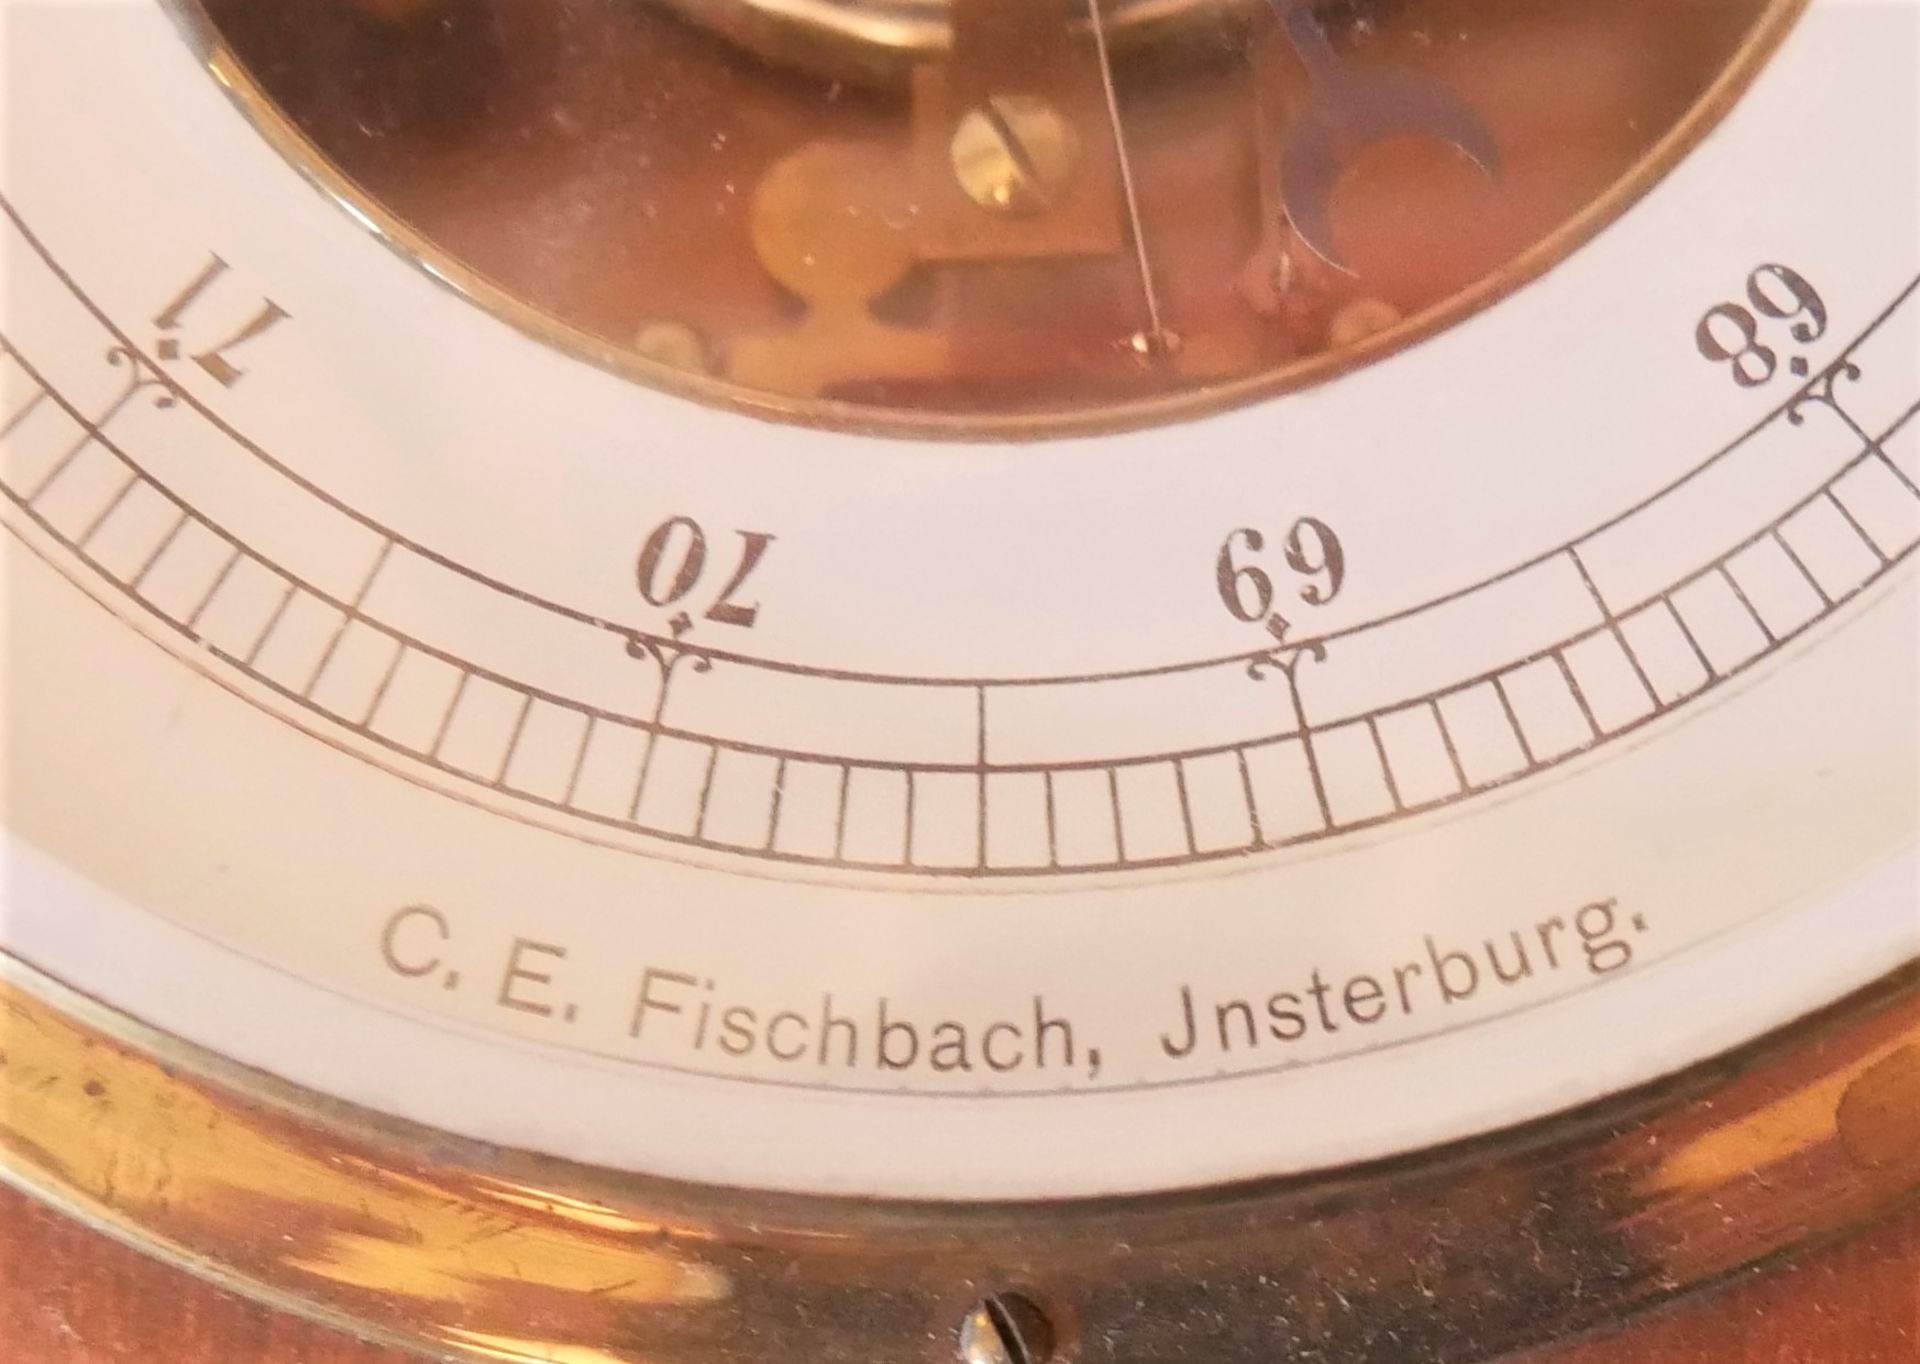 Barometer in Holzgehäuse, E.E. Fischbach, Jnsterburg. Auf Funktion nicht geprüft. Durchmesser ca. - Bild 2 aus 3